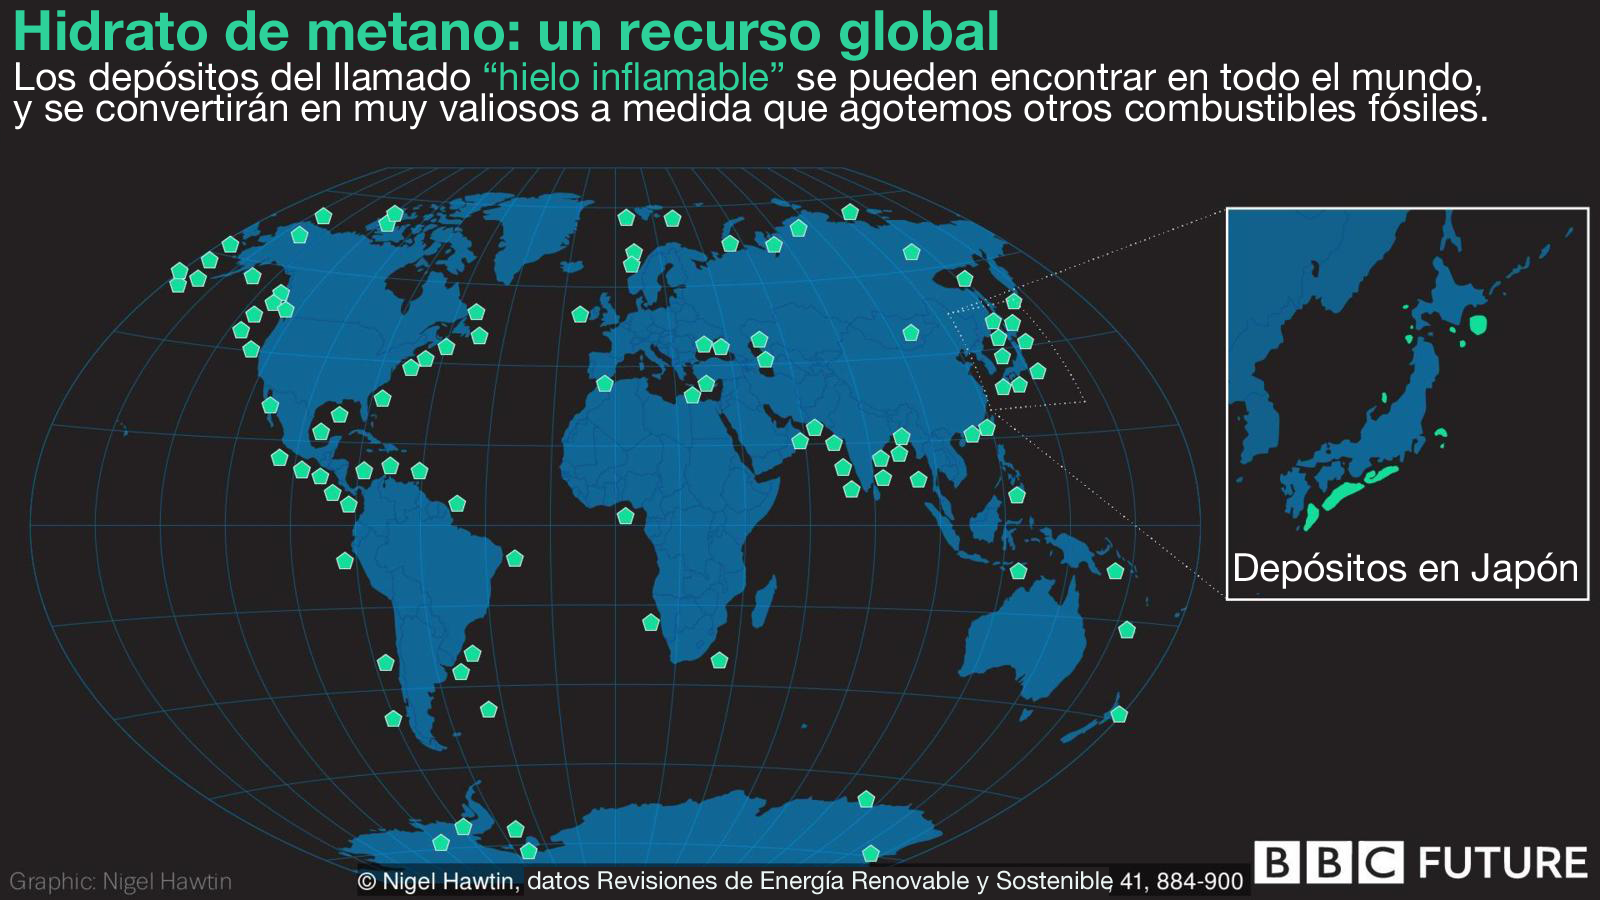 Visualización hidrato de metano en el mundo.